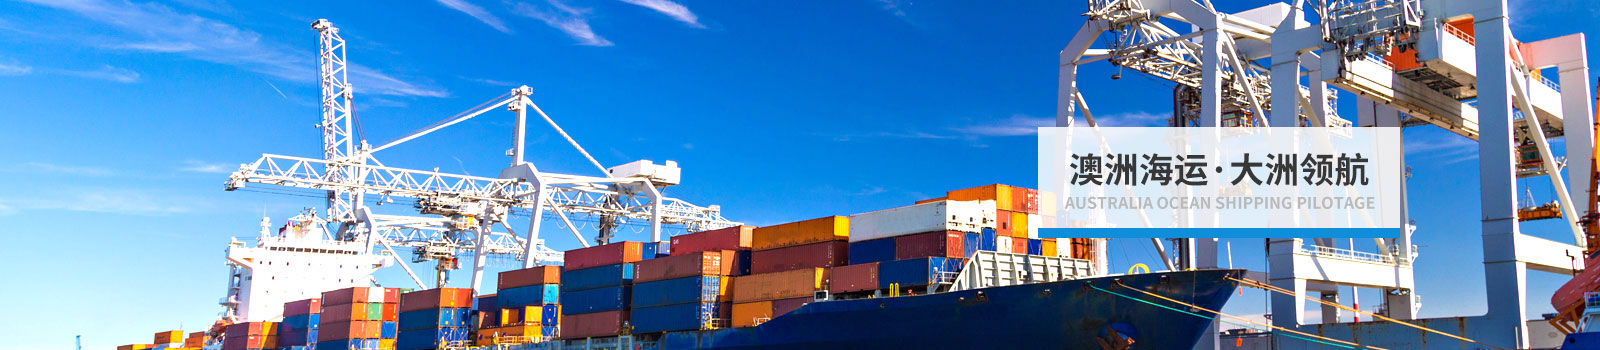 澳洲海运服务,澳大利亚货运,澳洲海运价格